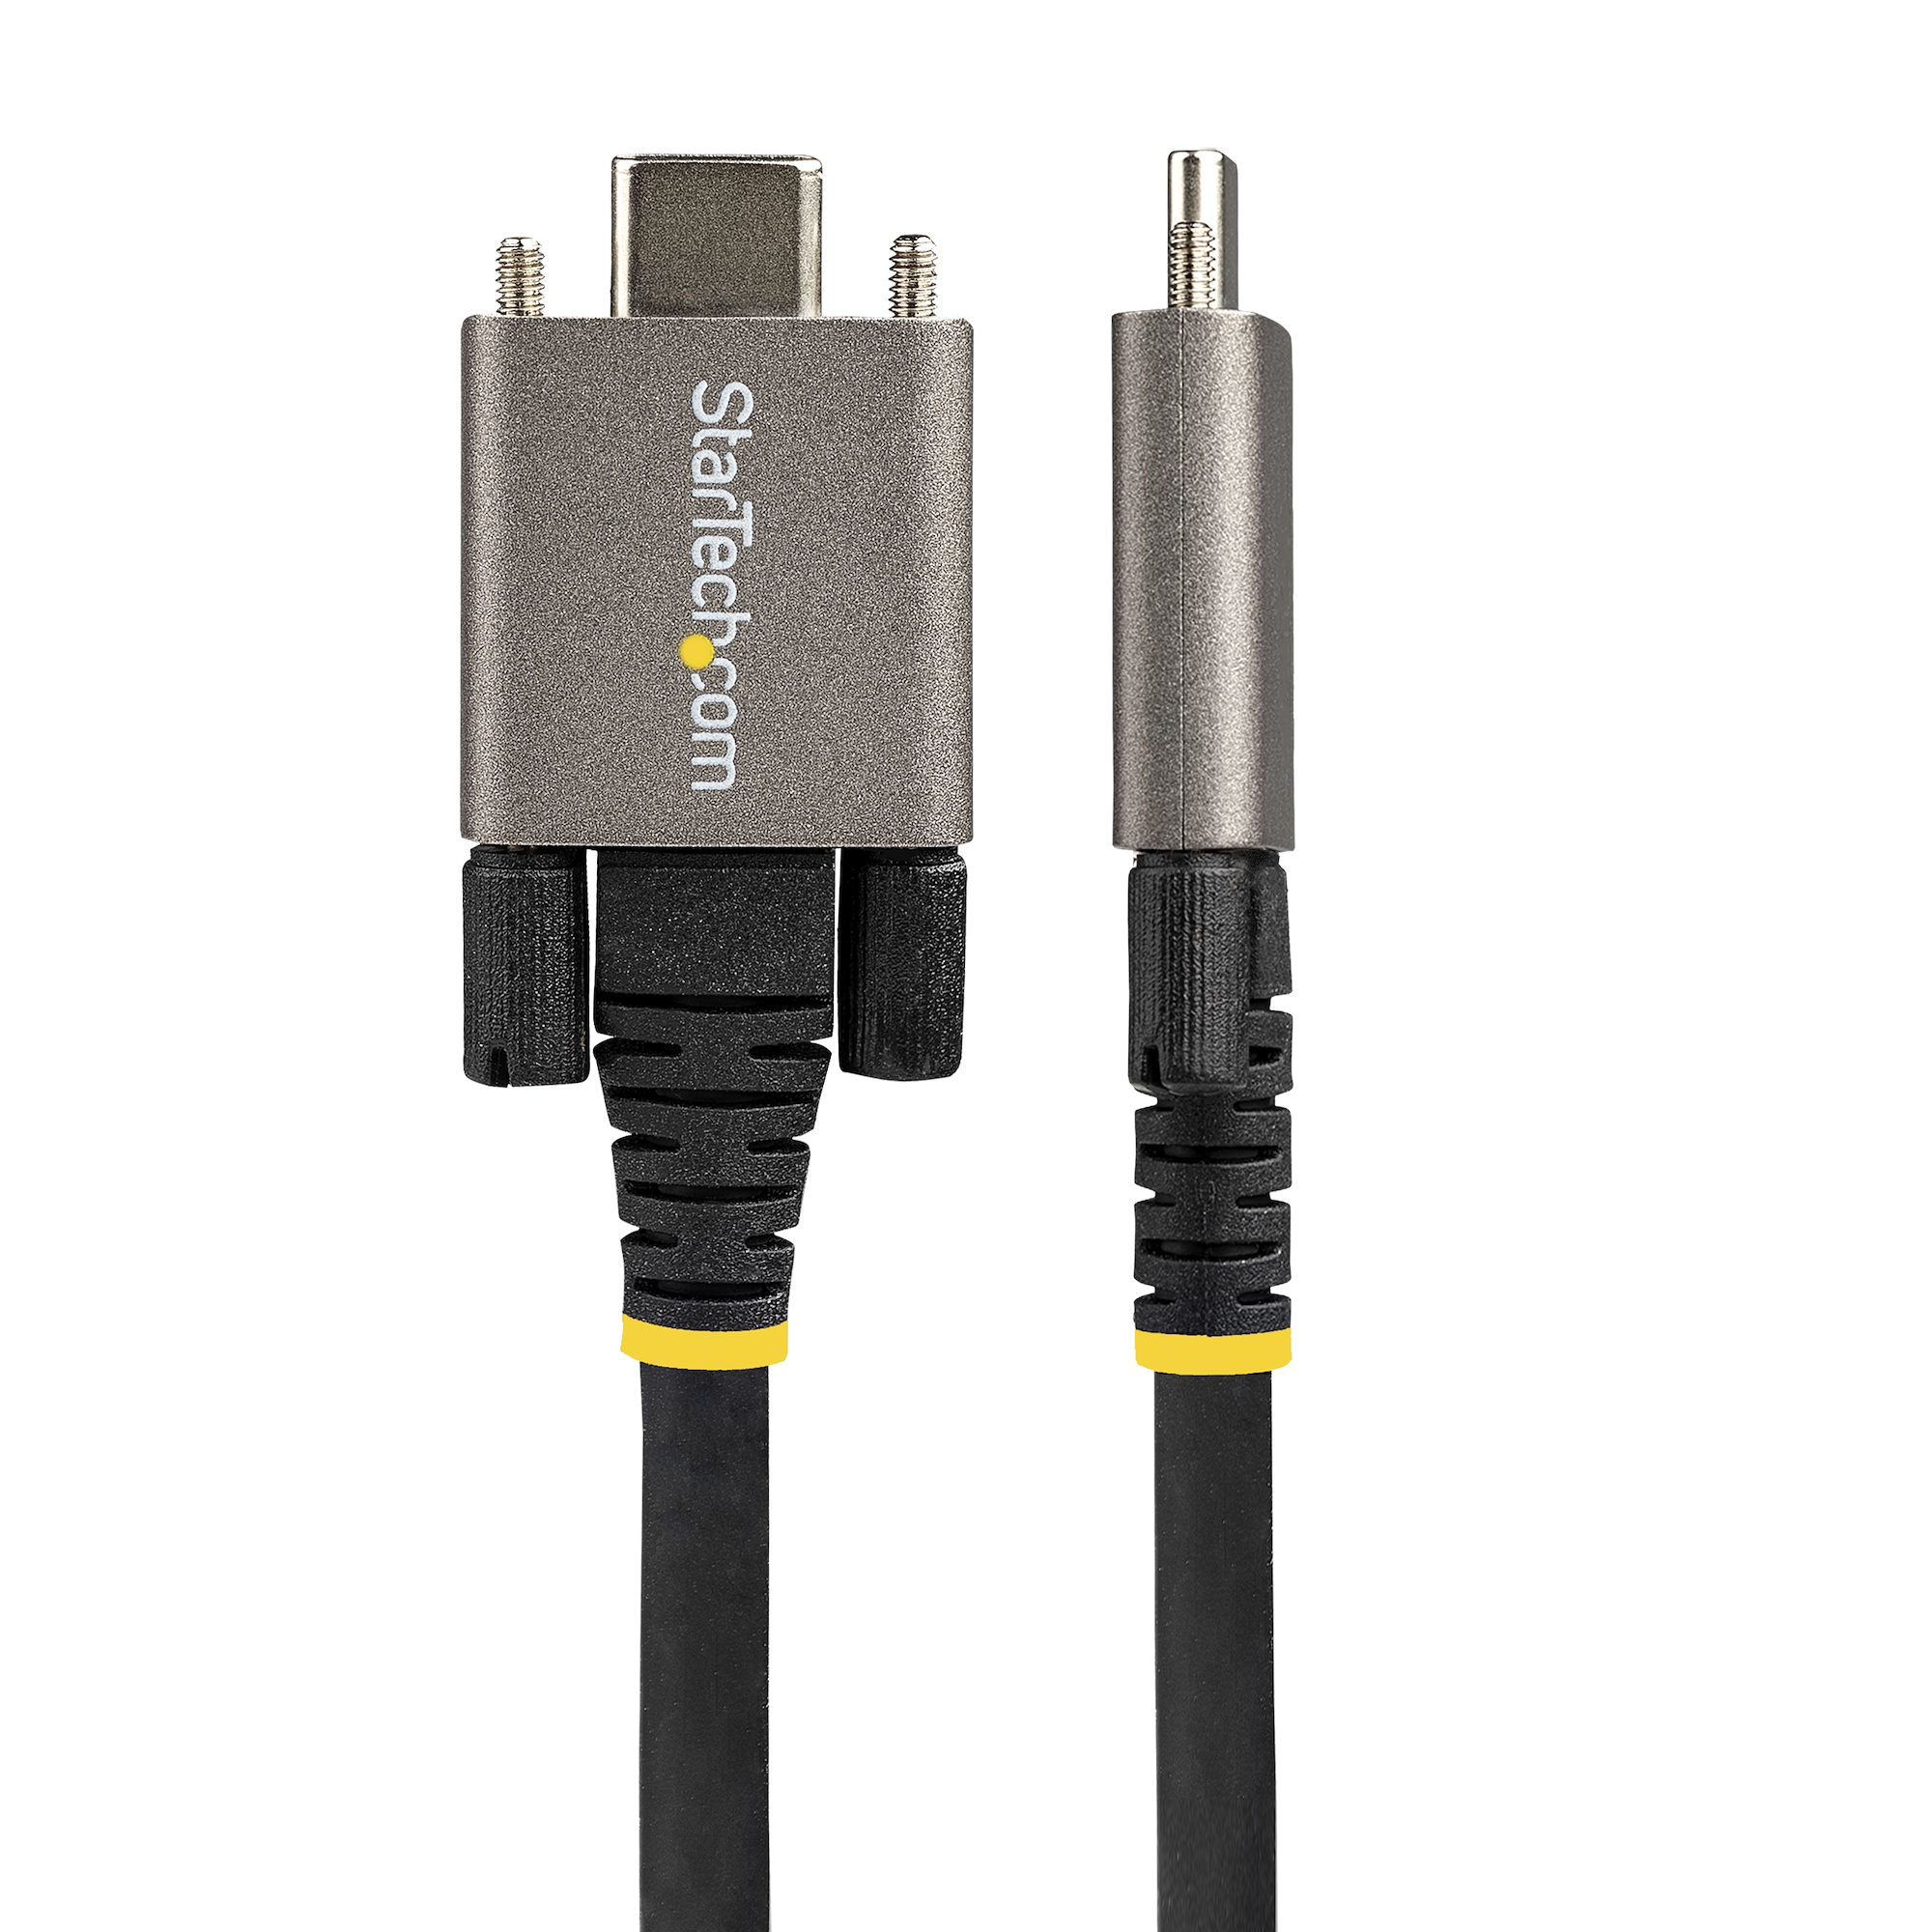 StarTech – Cable USB Type-C de 1m – USB 3.1 Tipo A a USB-C